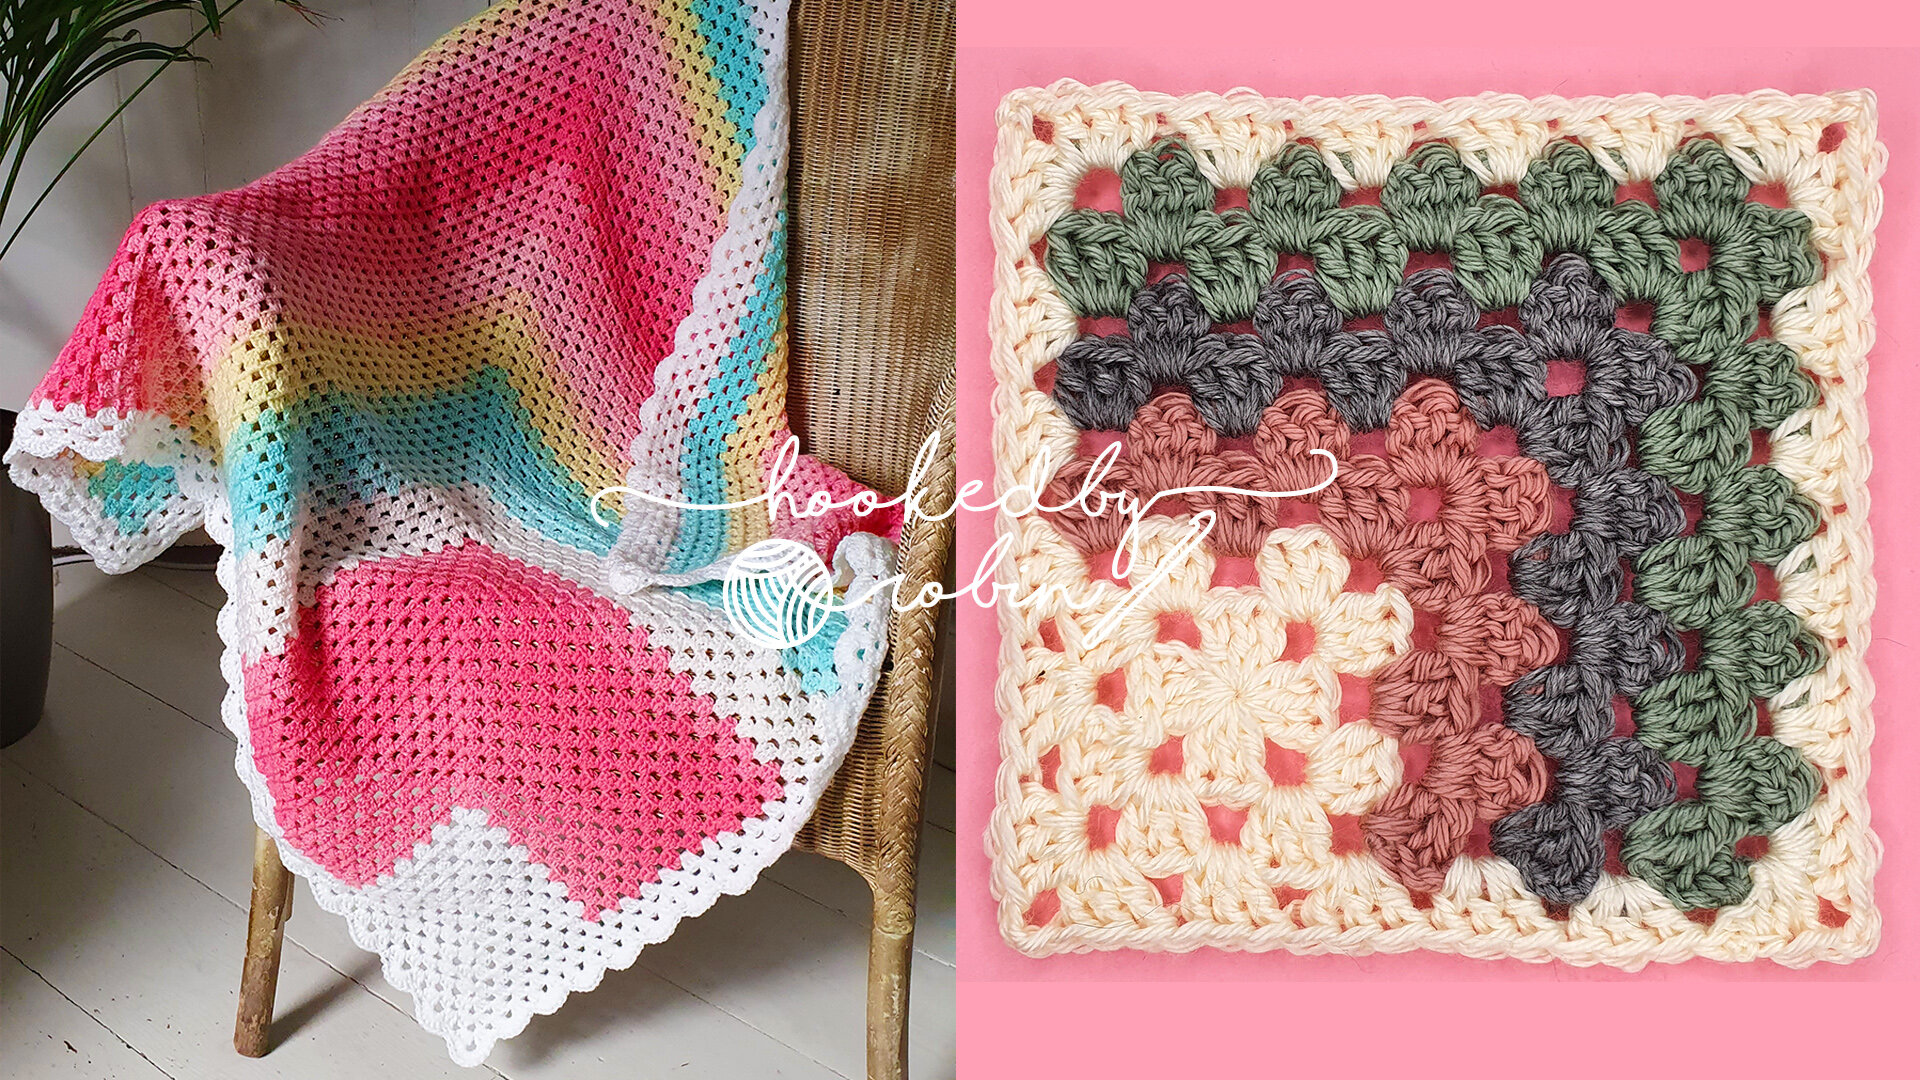 Easy Classic Granny Square Crochet Tutorial